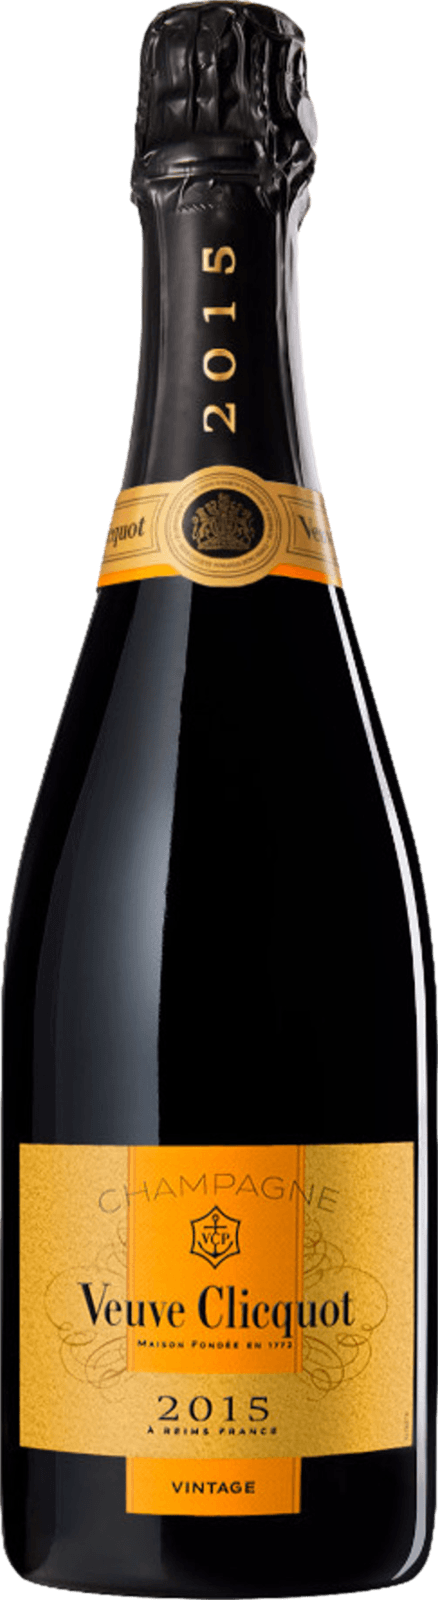 Champagne Veuve Clicquot Vintage 2015